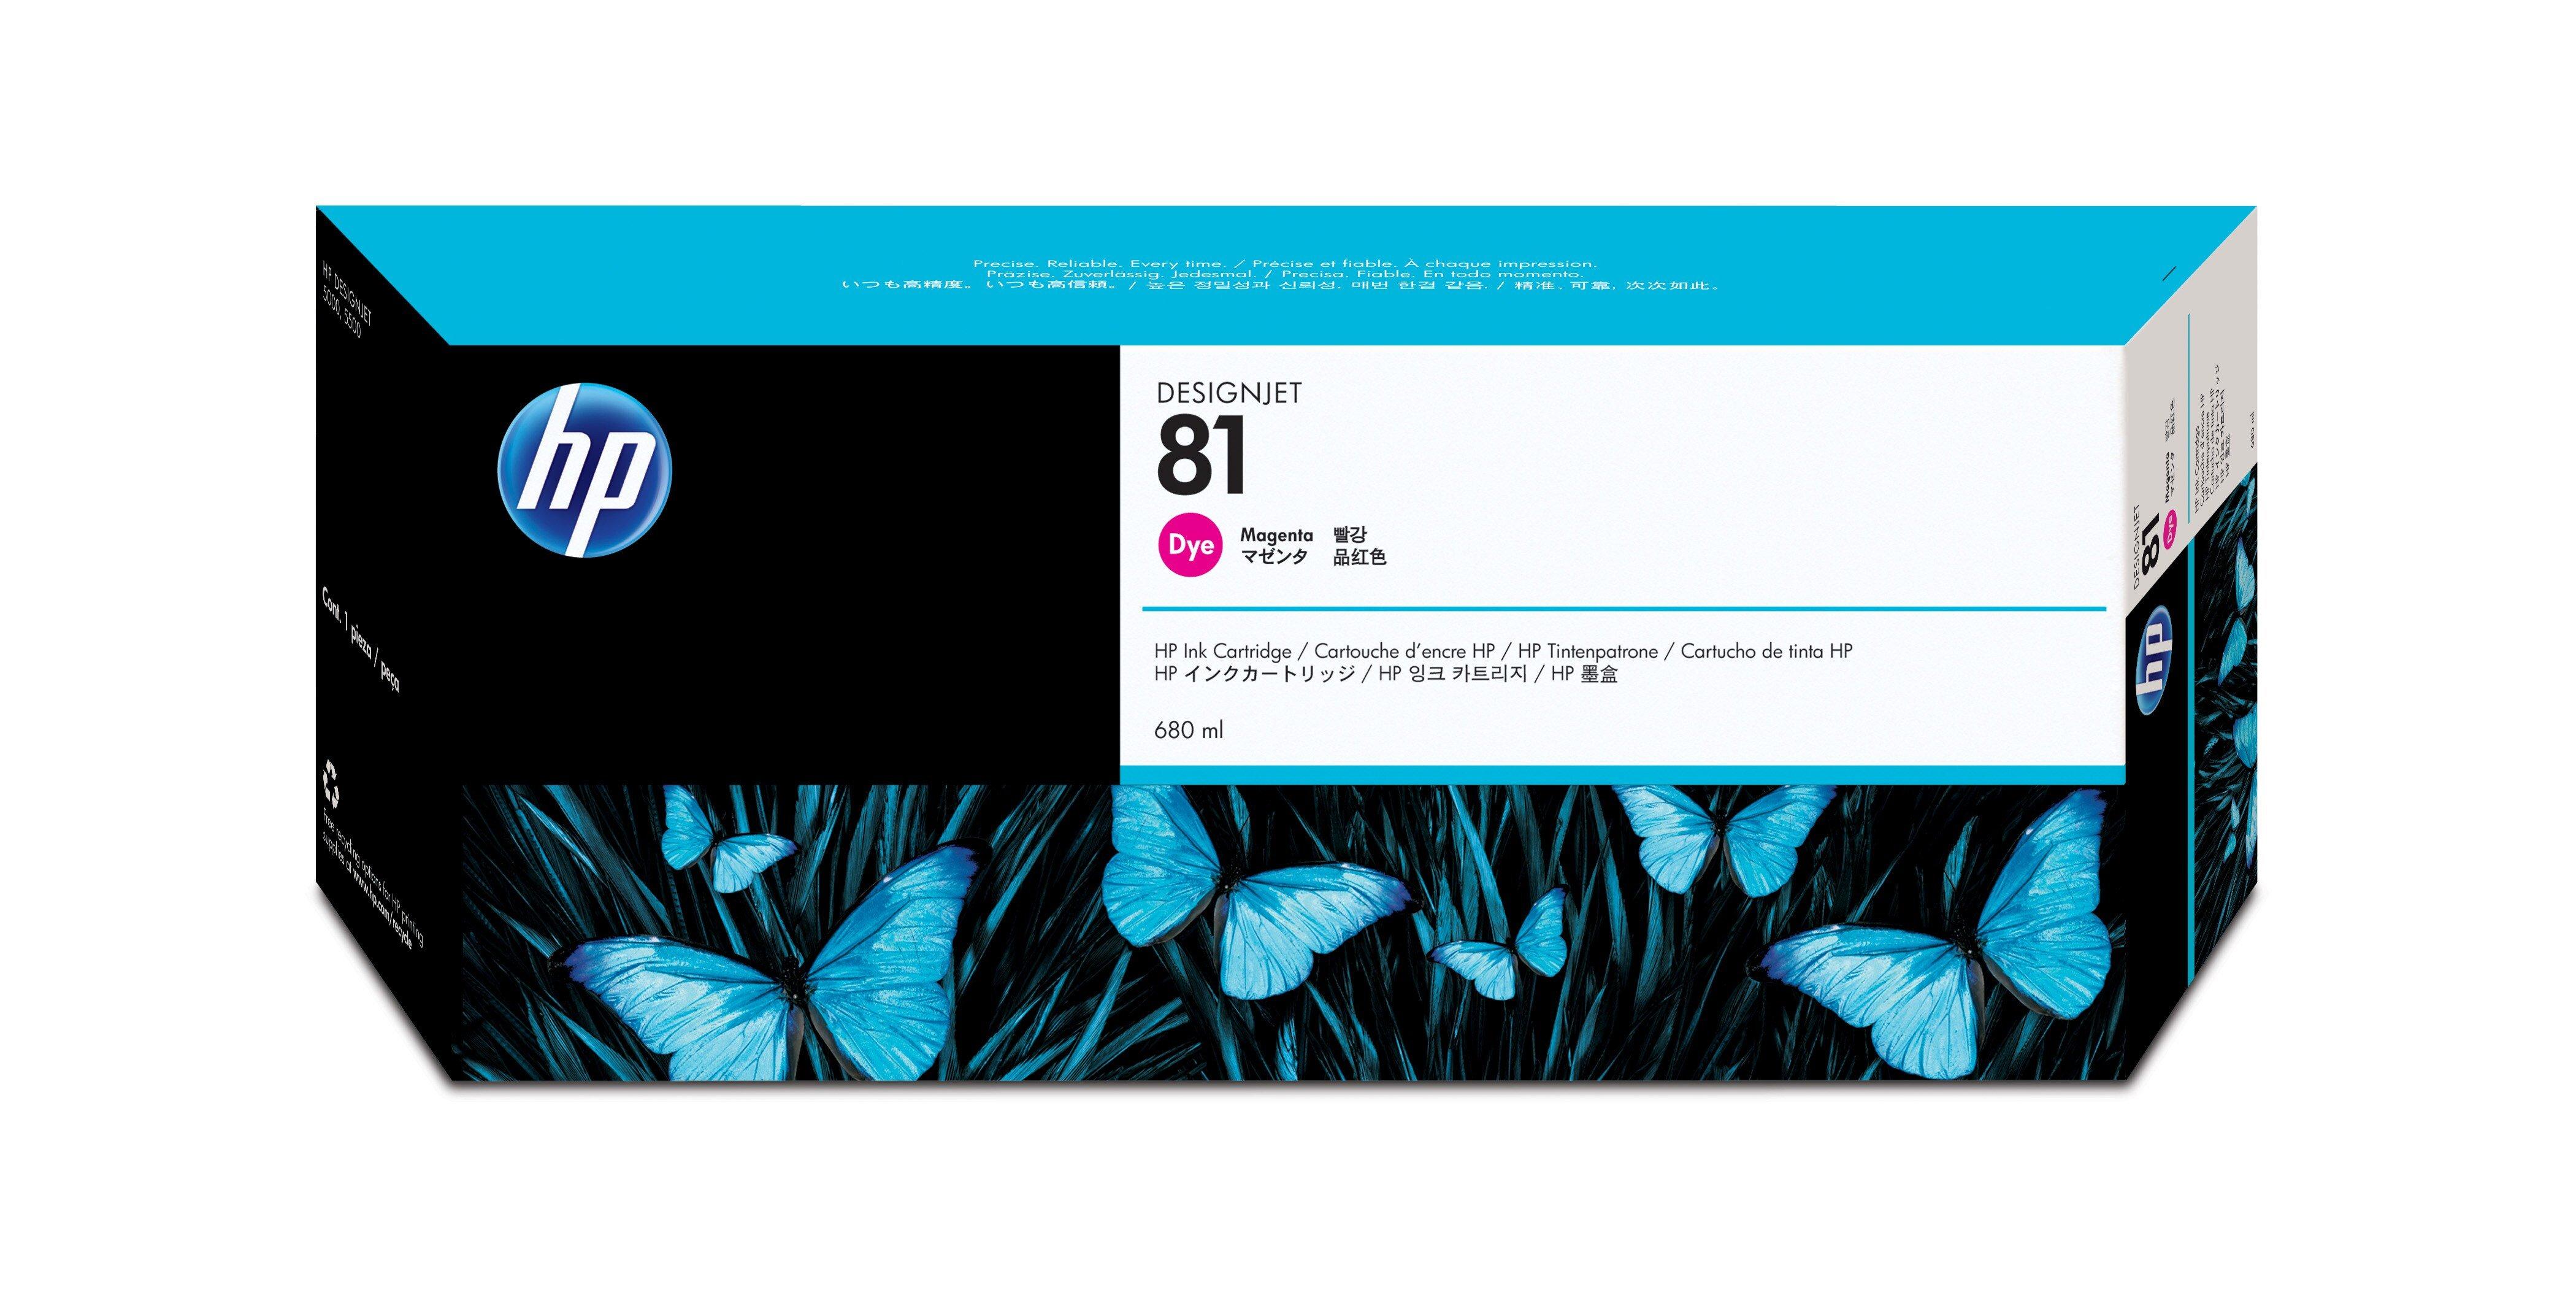 Hewlett-Packard  HP Tintenpatrone 81 magenta C4932A DesignJet 5000/5000PS 680ml 